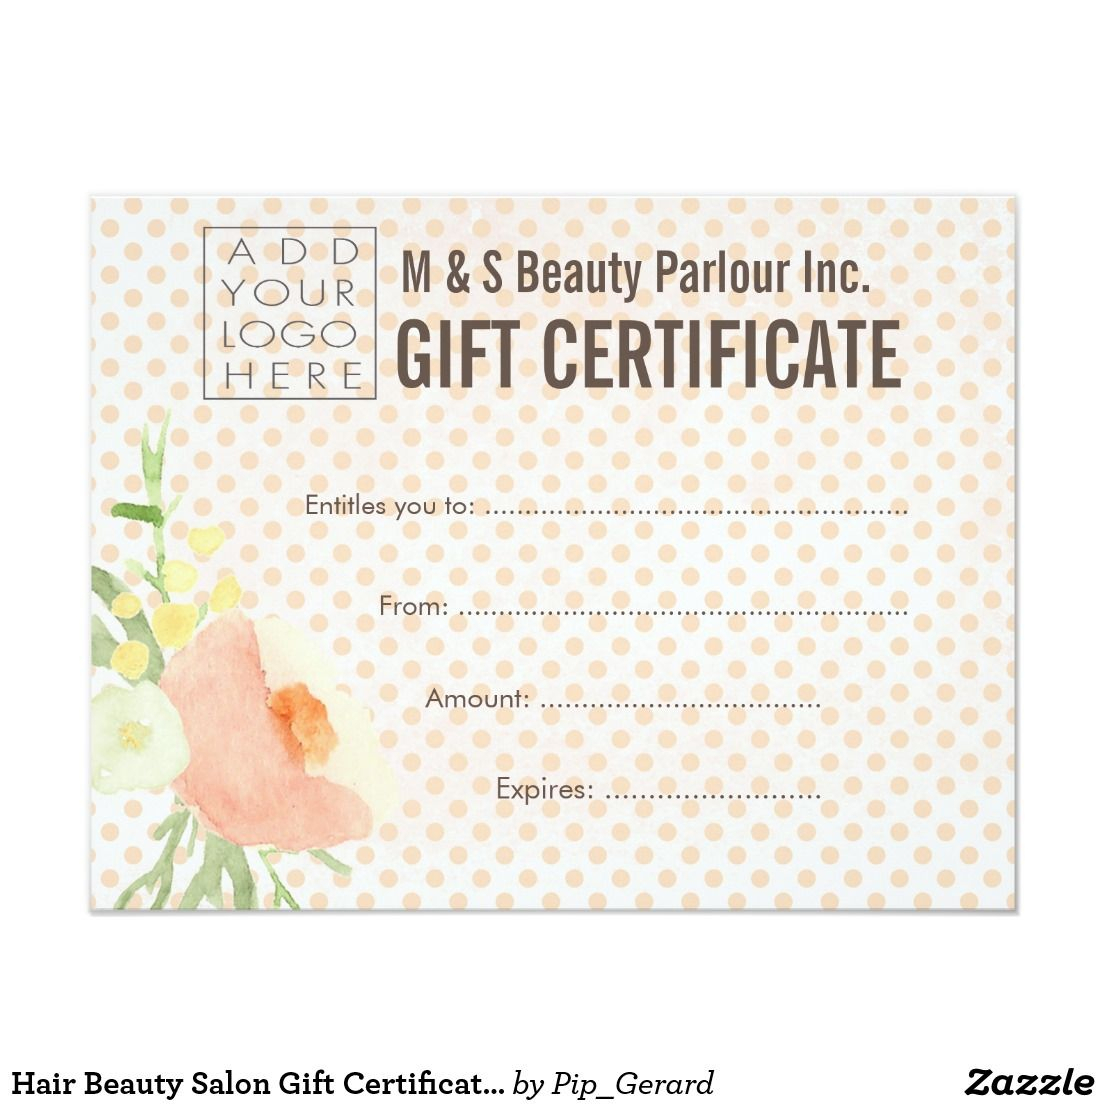 Hair Beauty Salon Gift Certificate Template | Zazzle Regarding Salon Gift Certificate Template